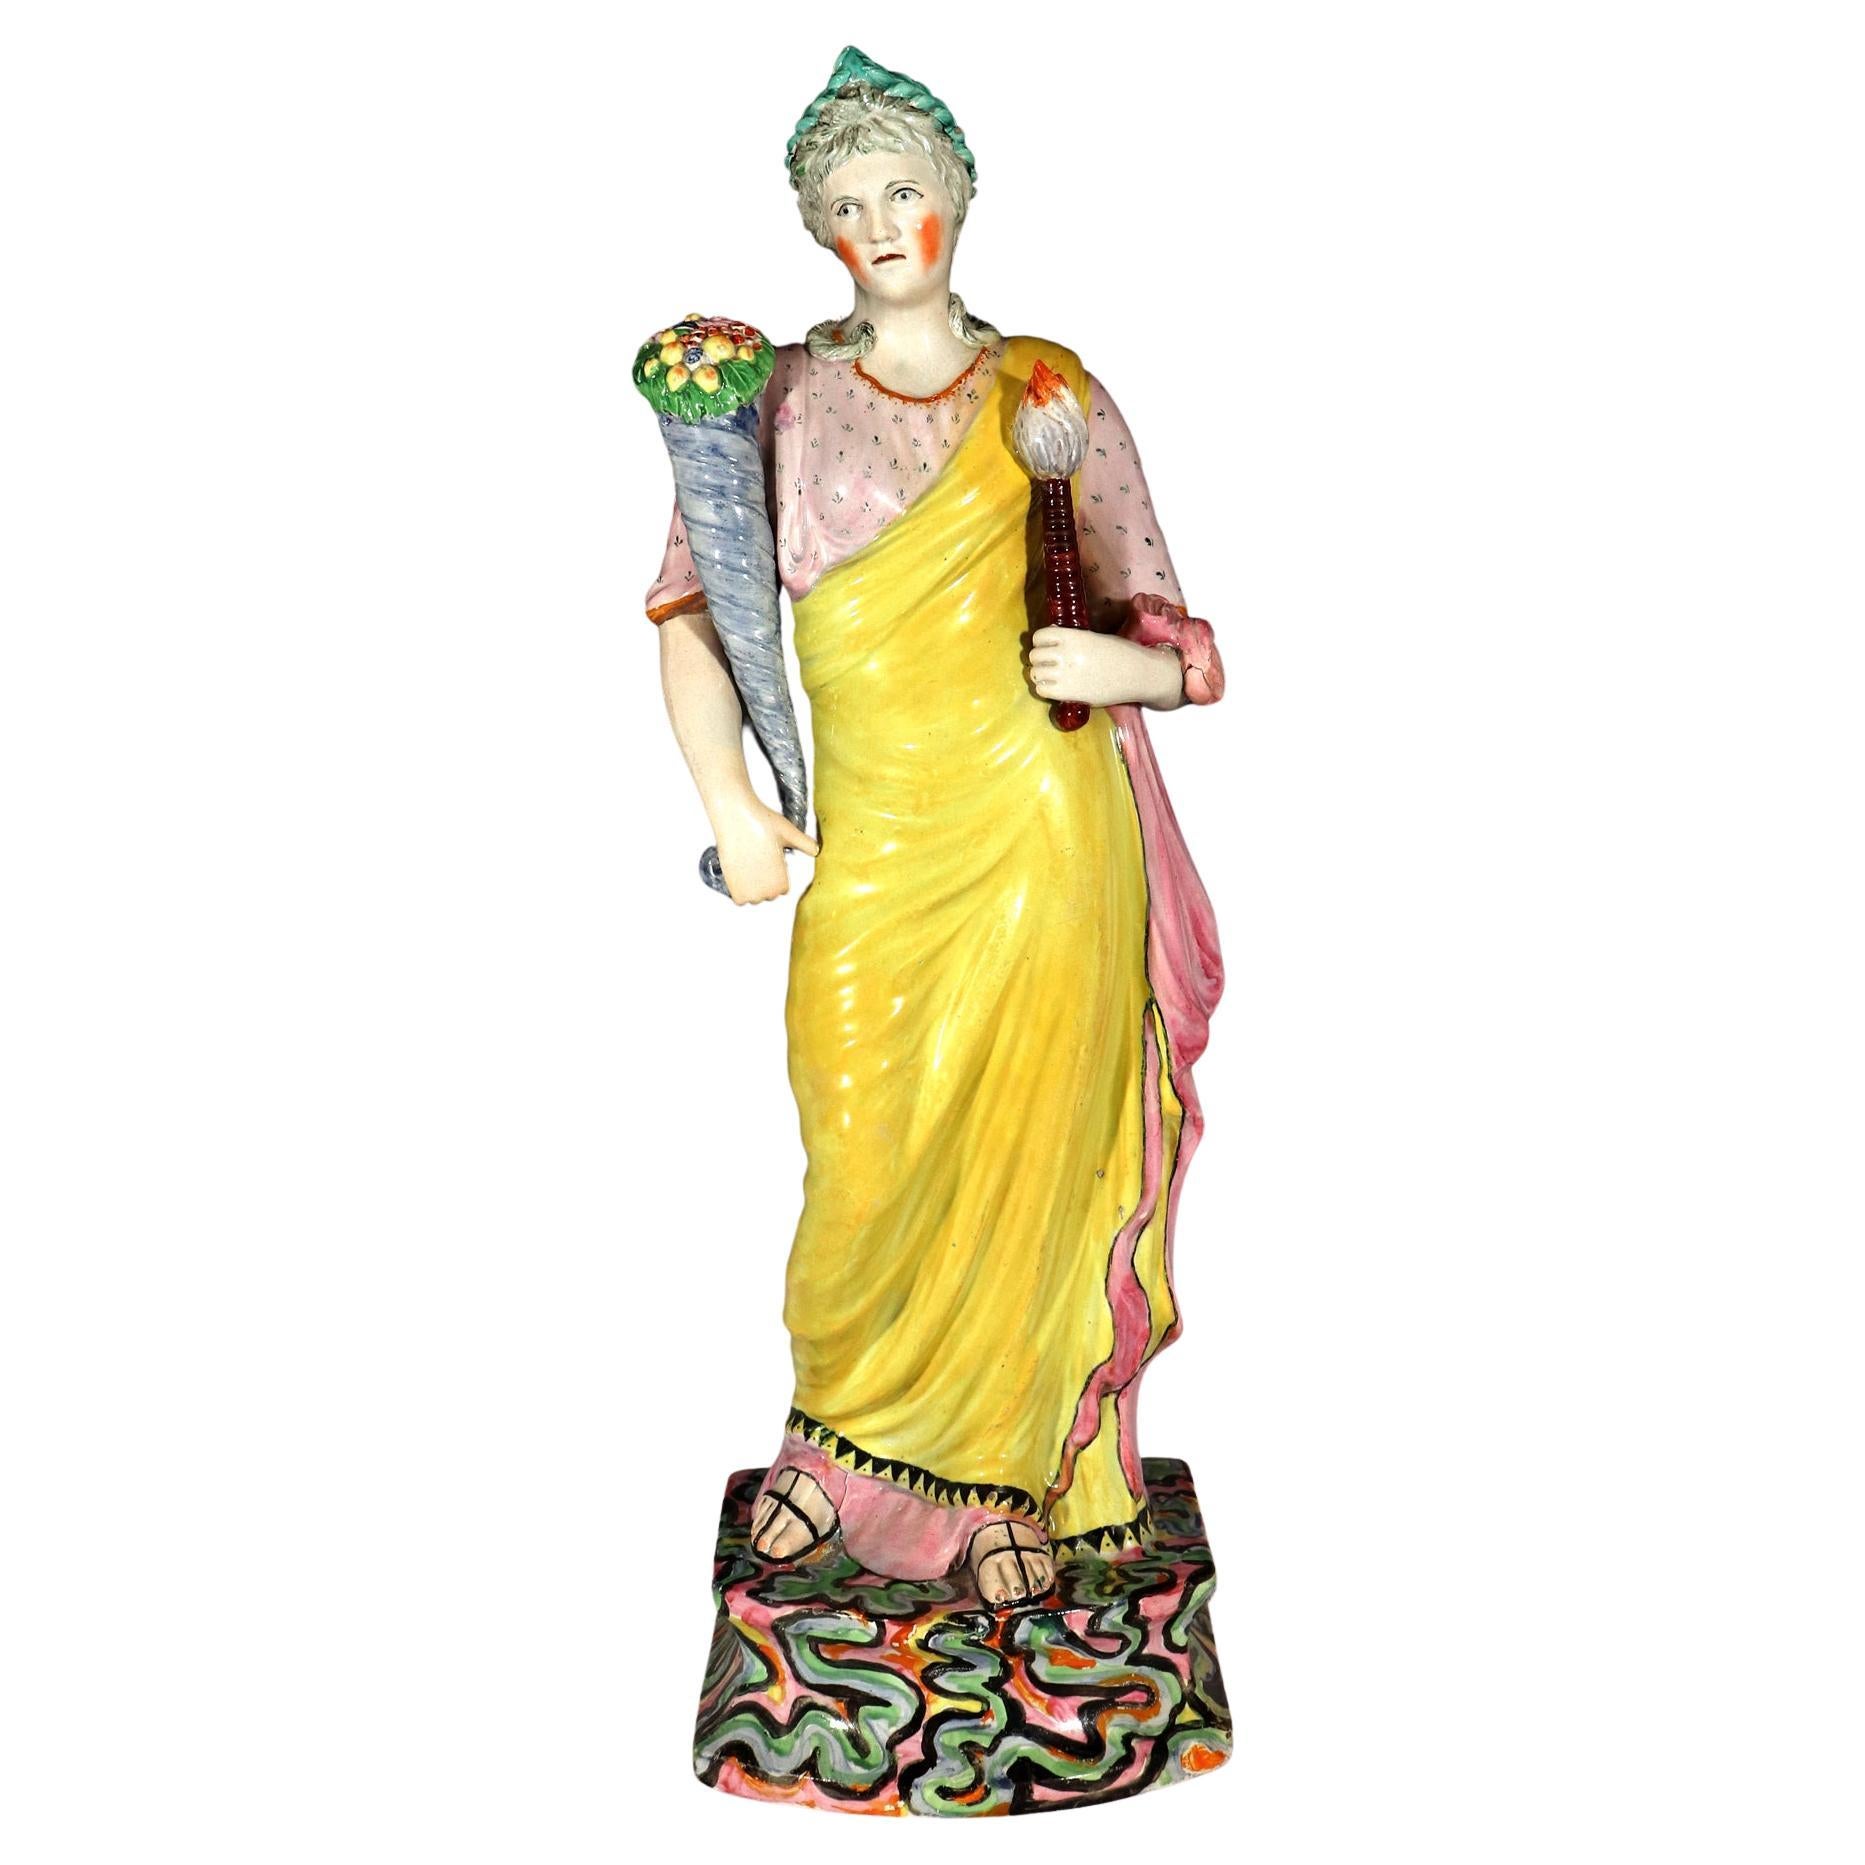  Große Staffordshire-Perlengeschirr-Figur von Keramik  oder Plenty